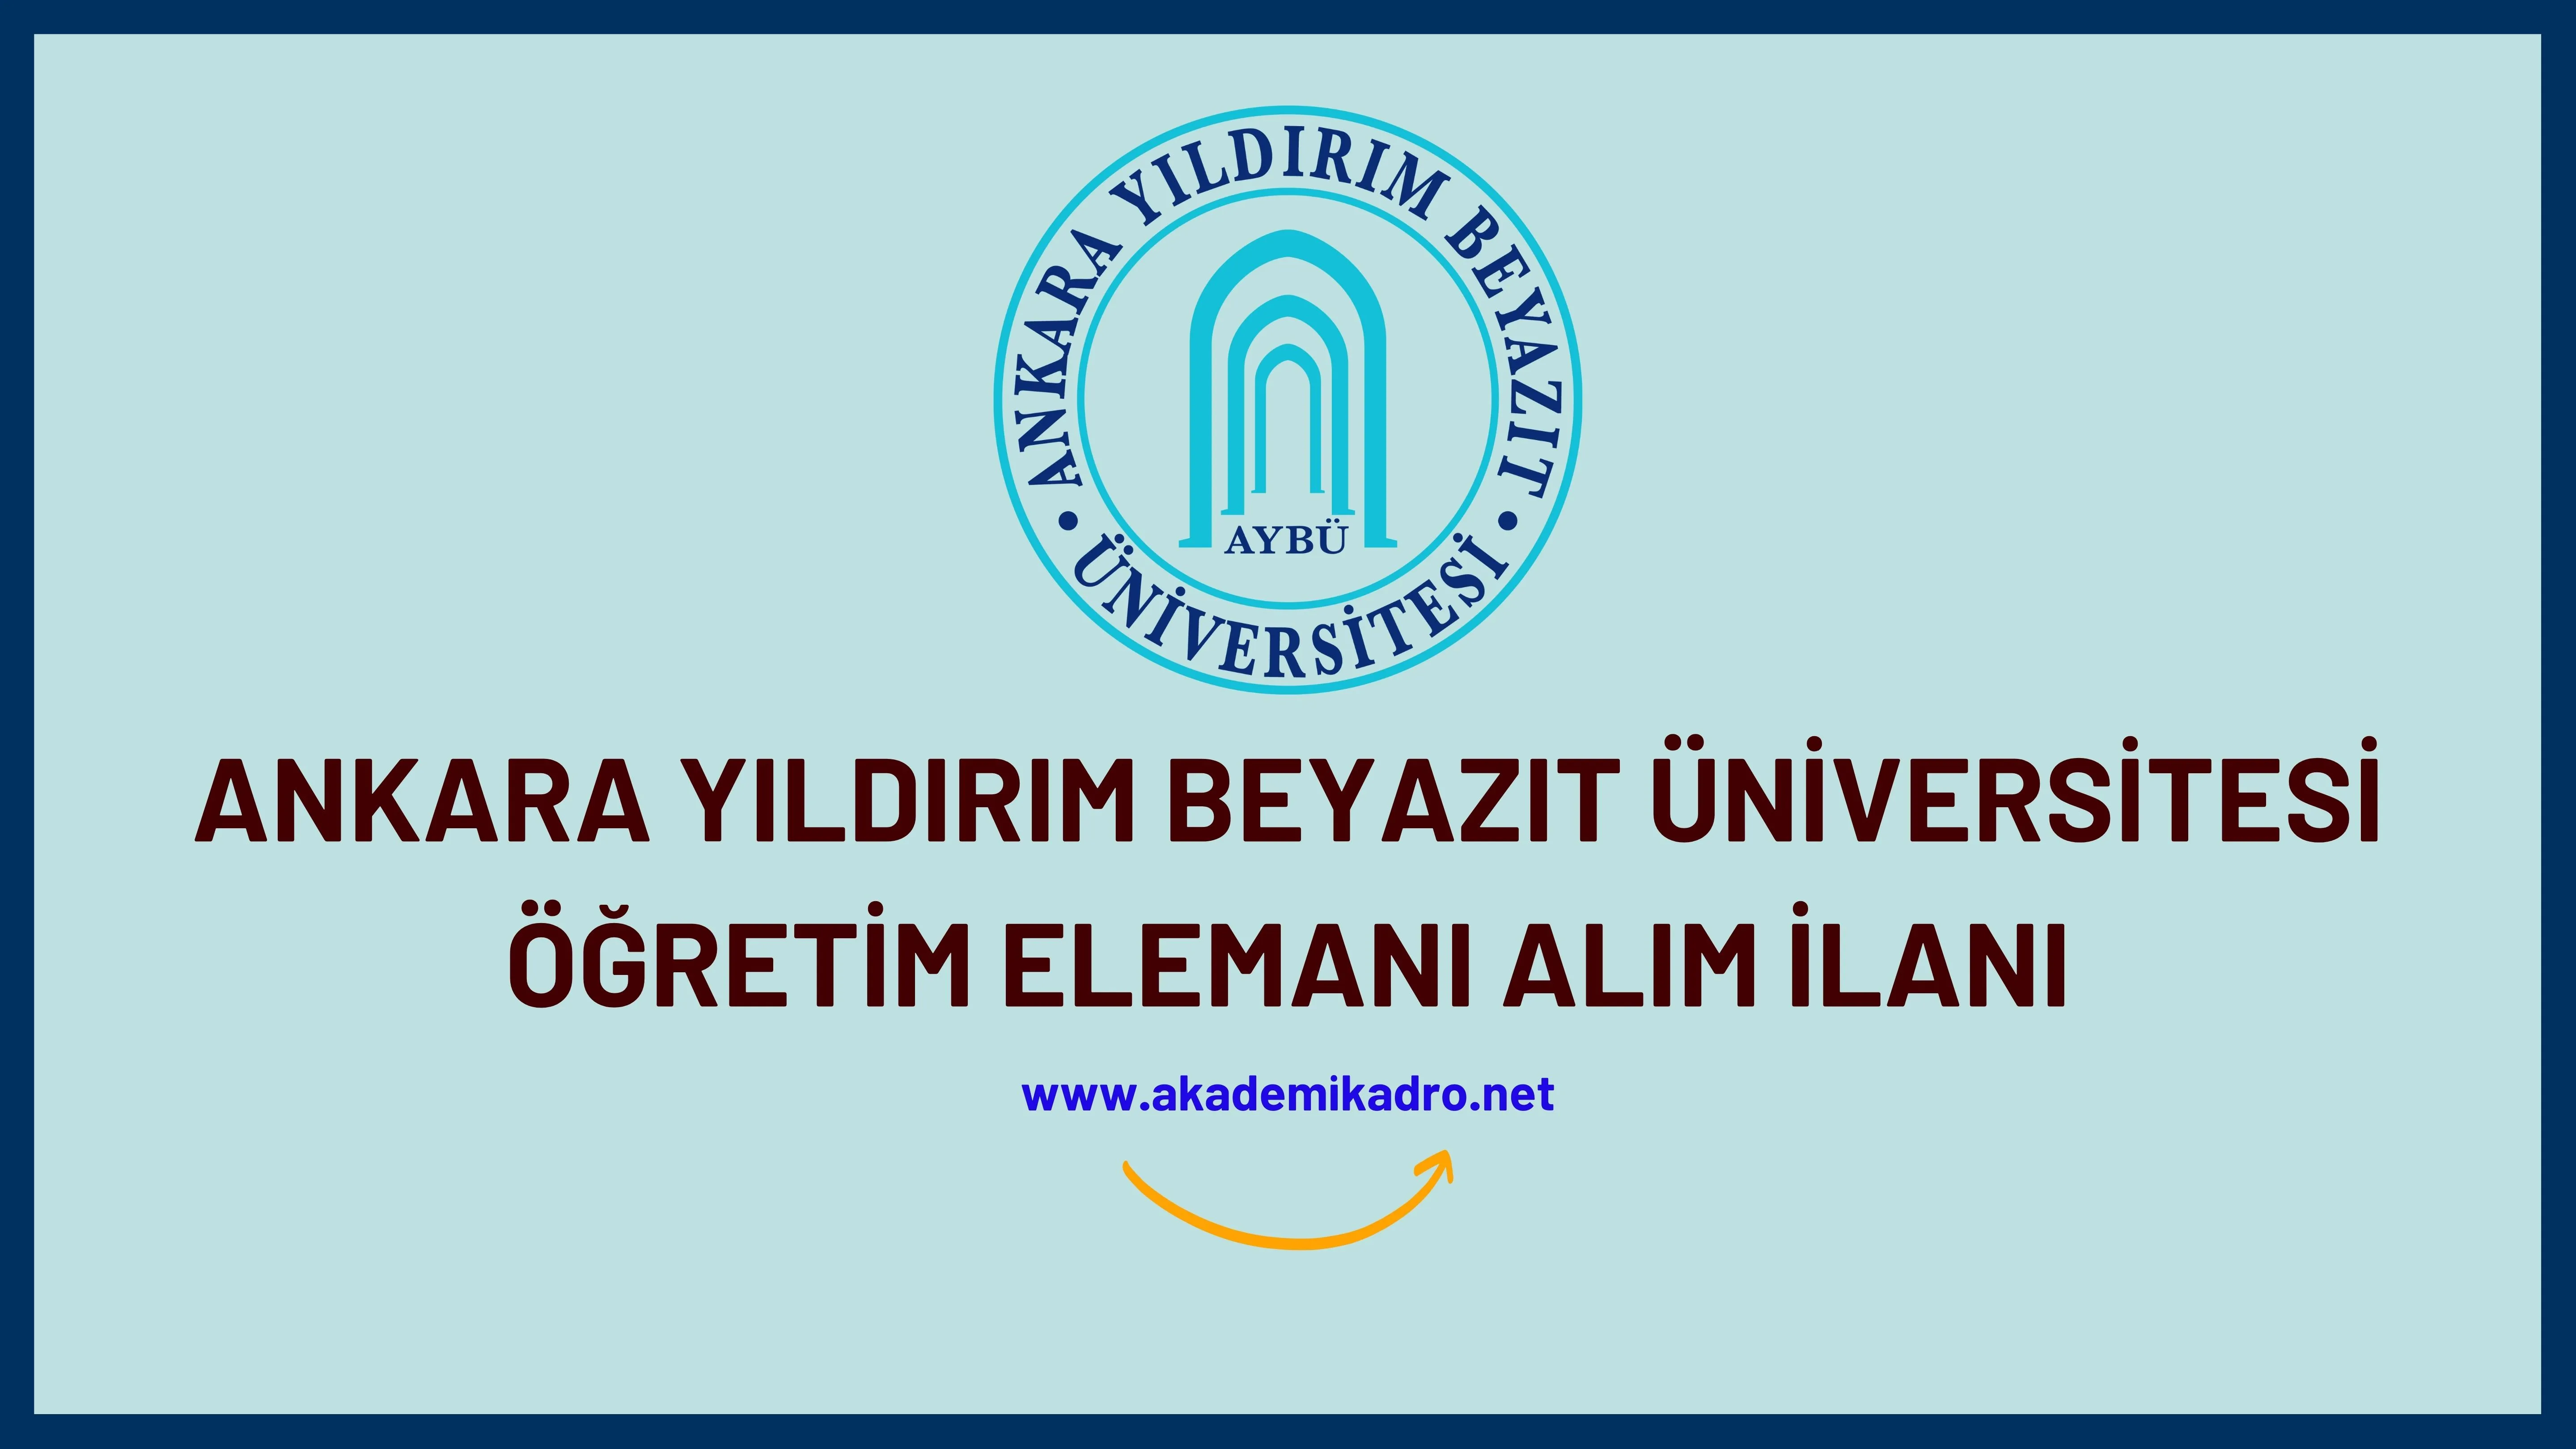 Ankara Yıldırım Beyazıt Üniversitesi 85 Öğretim üyesi, 9 Öğretim Görevlisi ve 4 Araştırma görevlisi alacaktır. Son başvuru tarihi 24 Kasım 2022